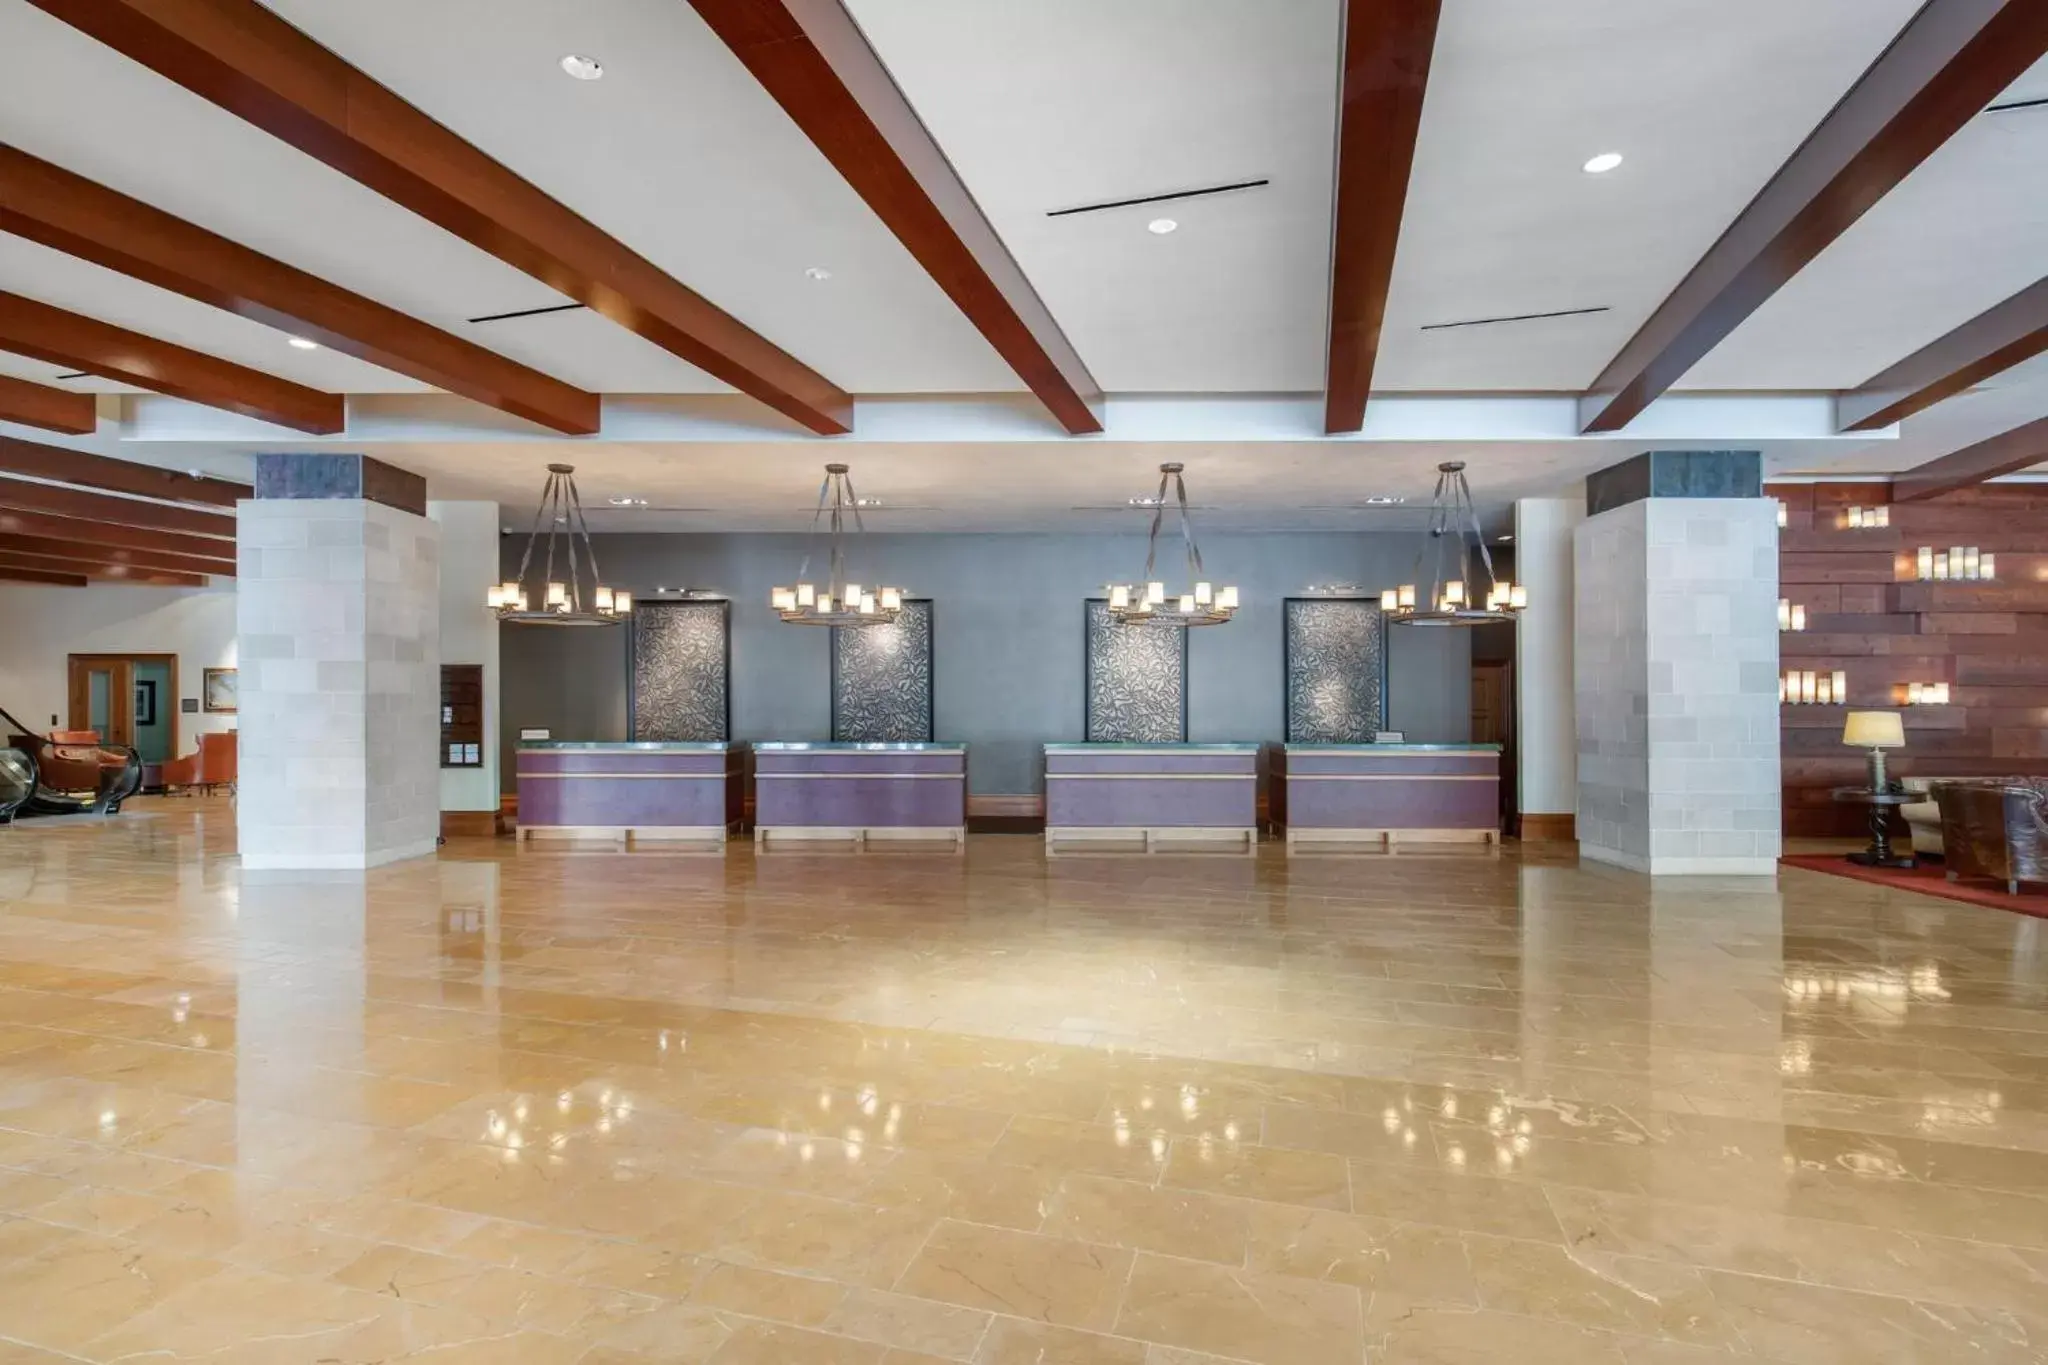 Lobby or reception, Lobby/Reception in Omni Fort Worth Hotel